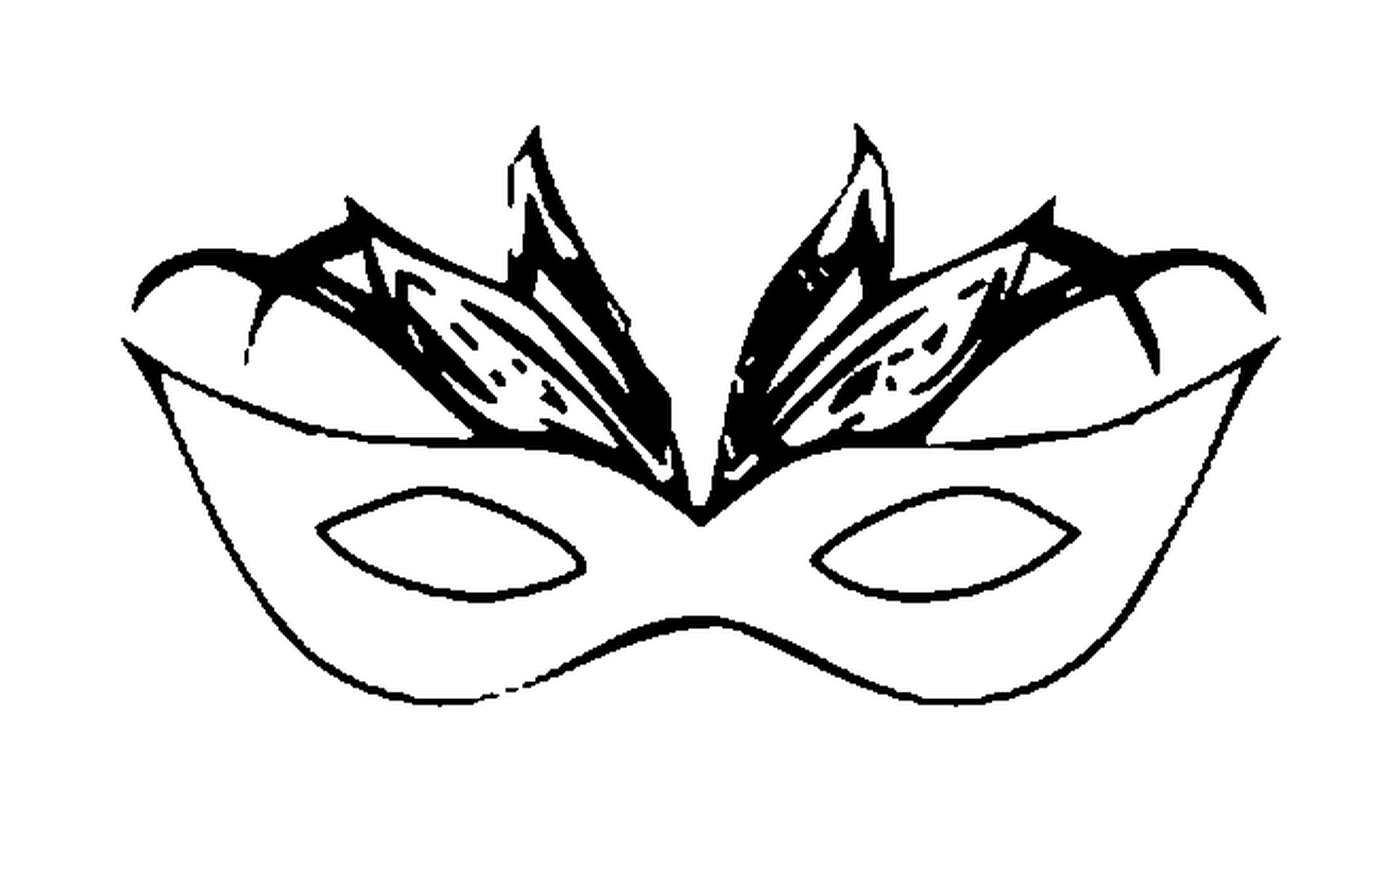  Una máscara de carnaval para los ojos 